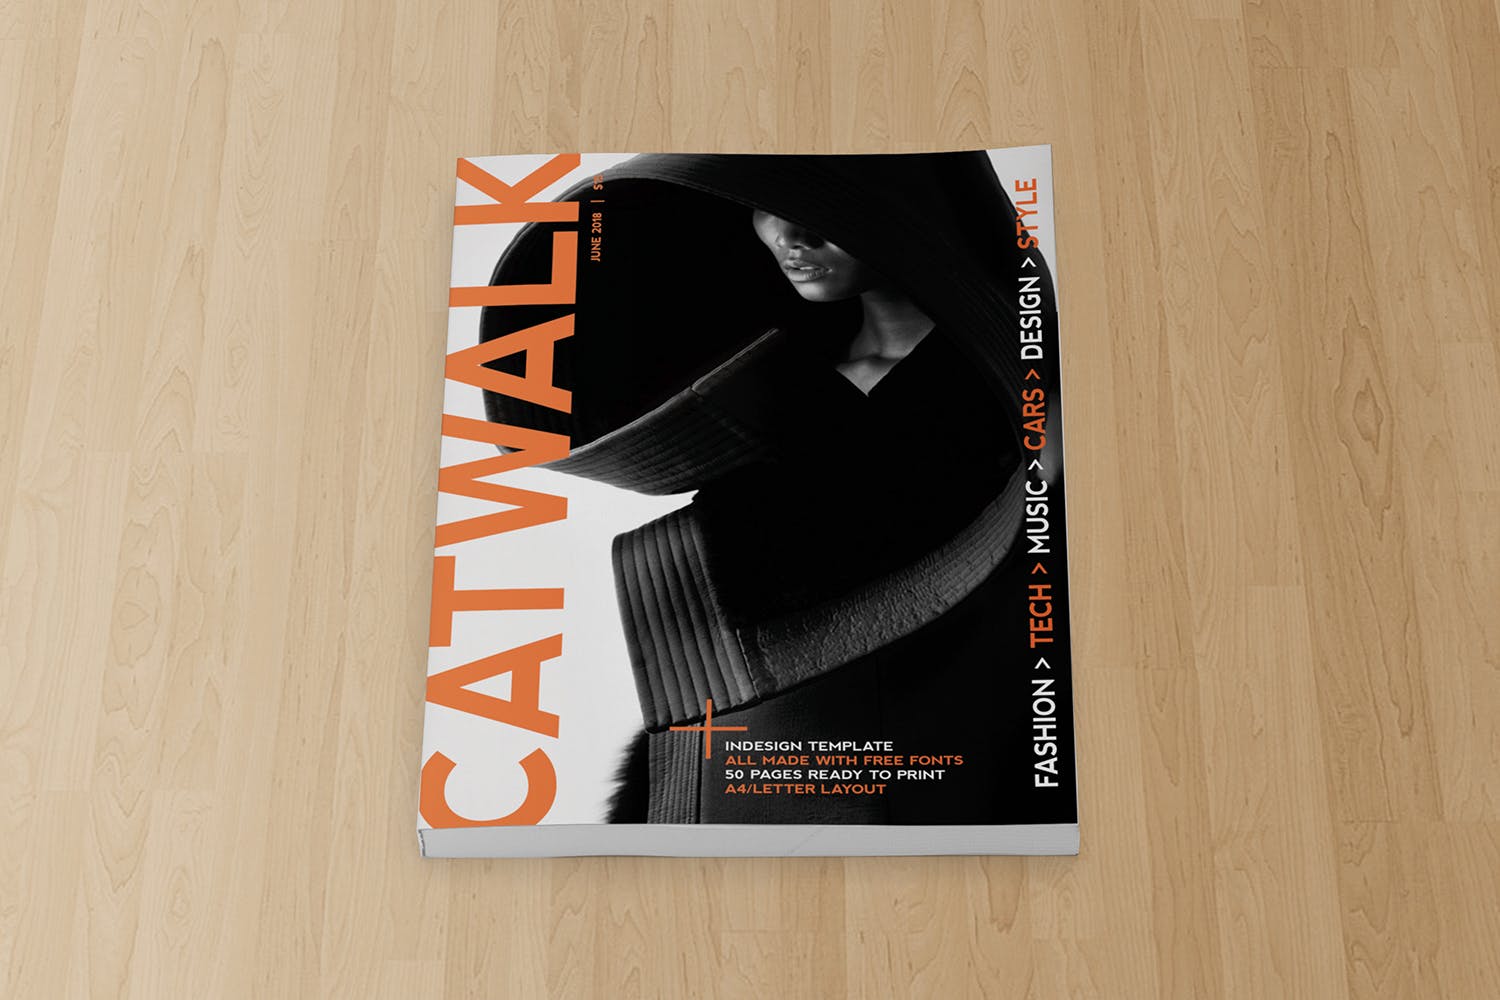 杂志封面印刷效果图样机第一素材精选模板 Magazine Cover Mockup插图(2)